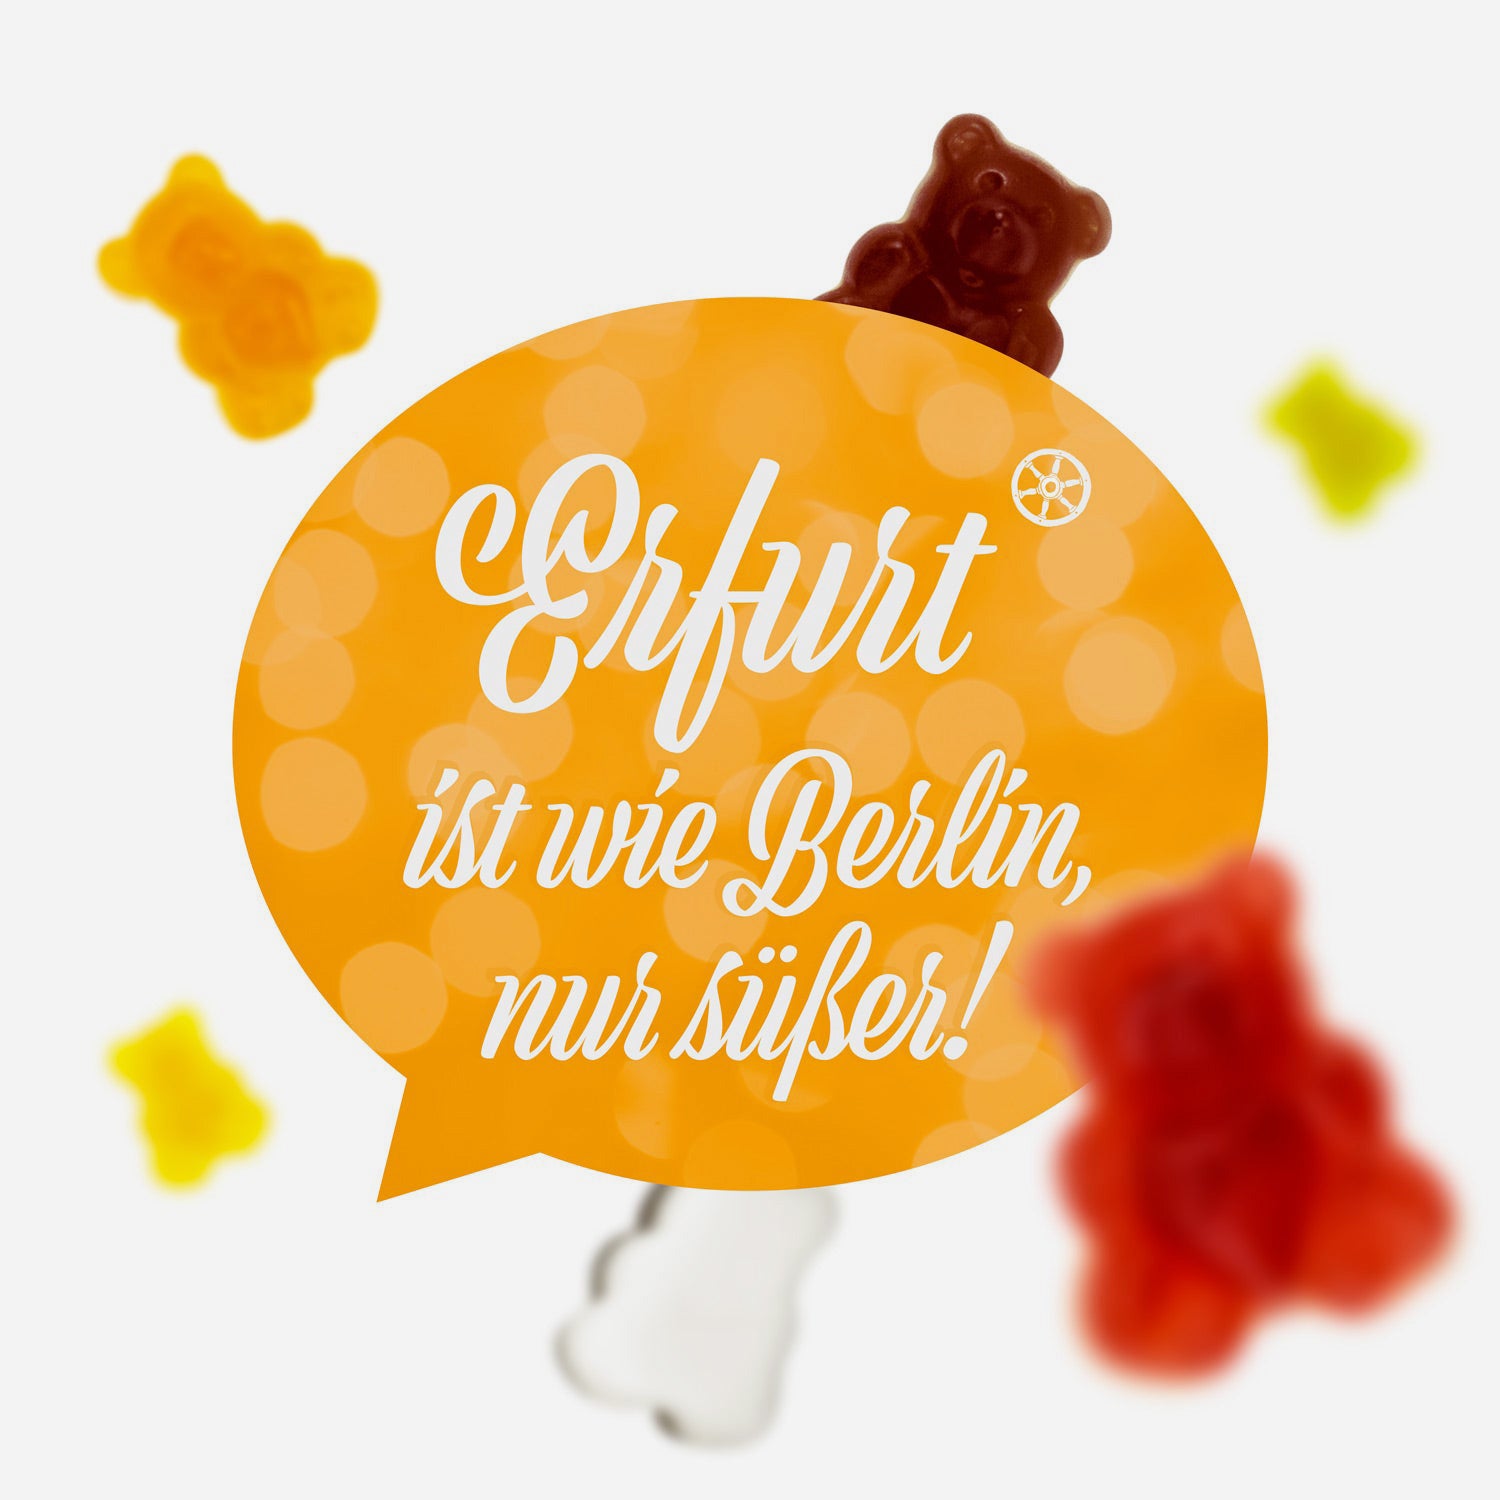 Erfurt ist wie Berlin, nur süßer - Fruchtsaftbärchen